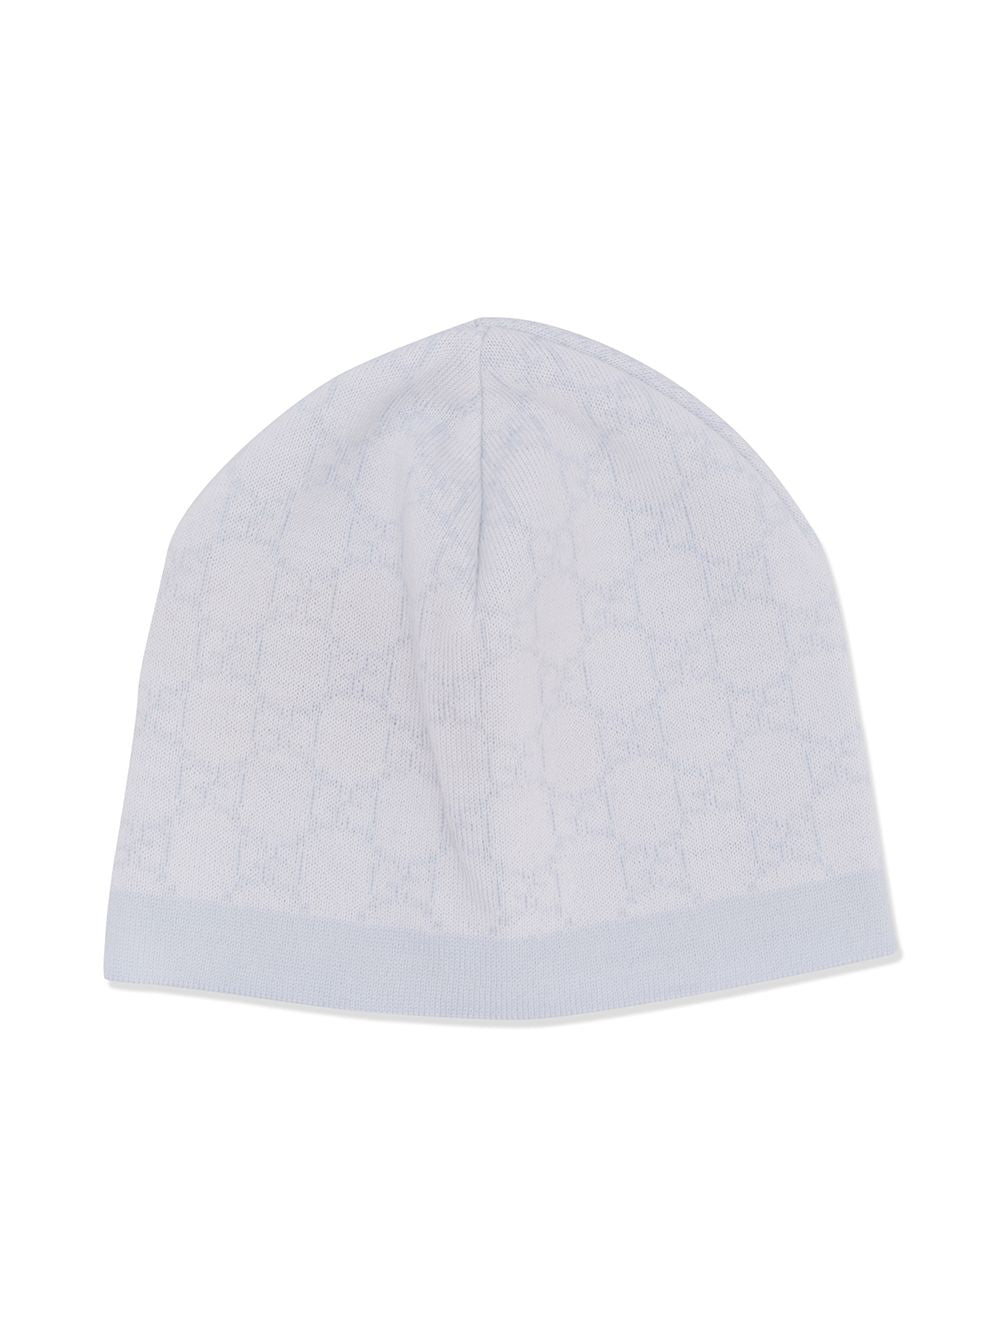 Cappello blu/avorio unisex